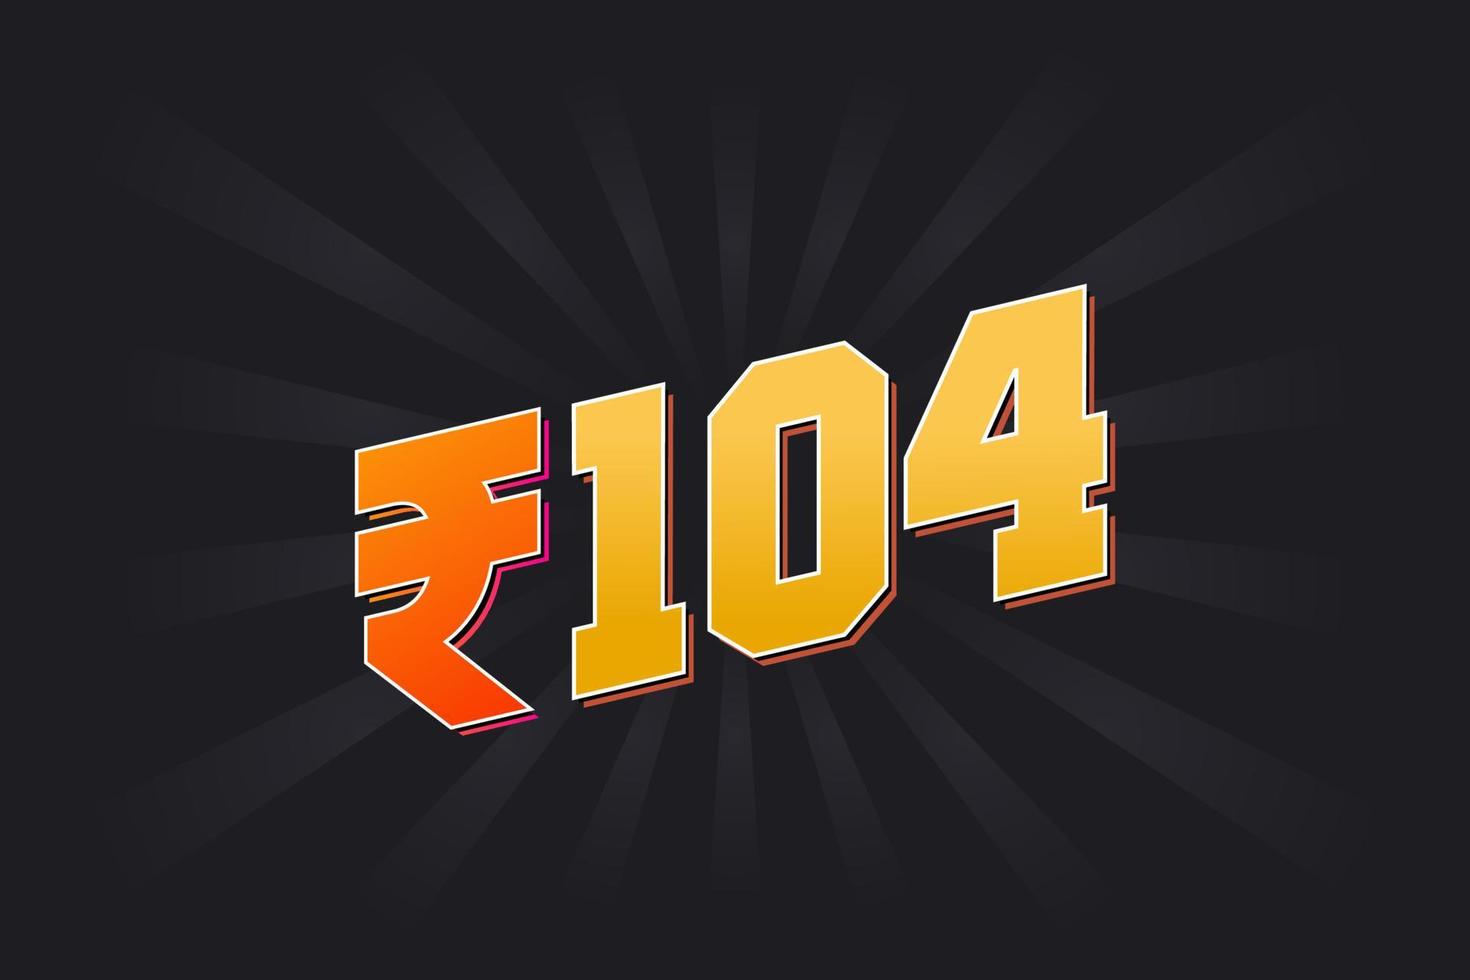 104 indisk rupee vektor valuta bild. 104 rupee symbol djärv text vektor illustration